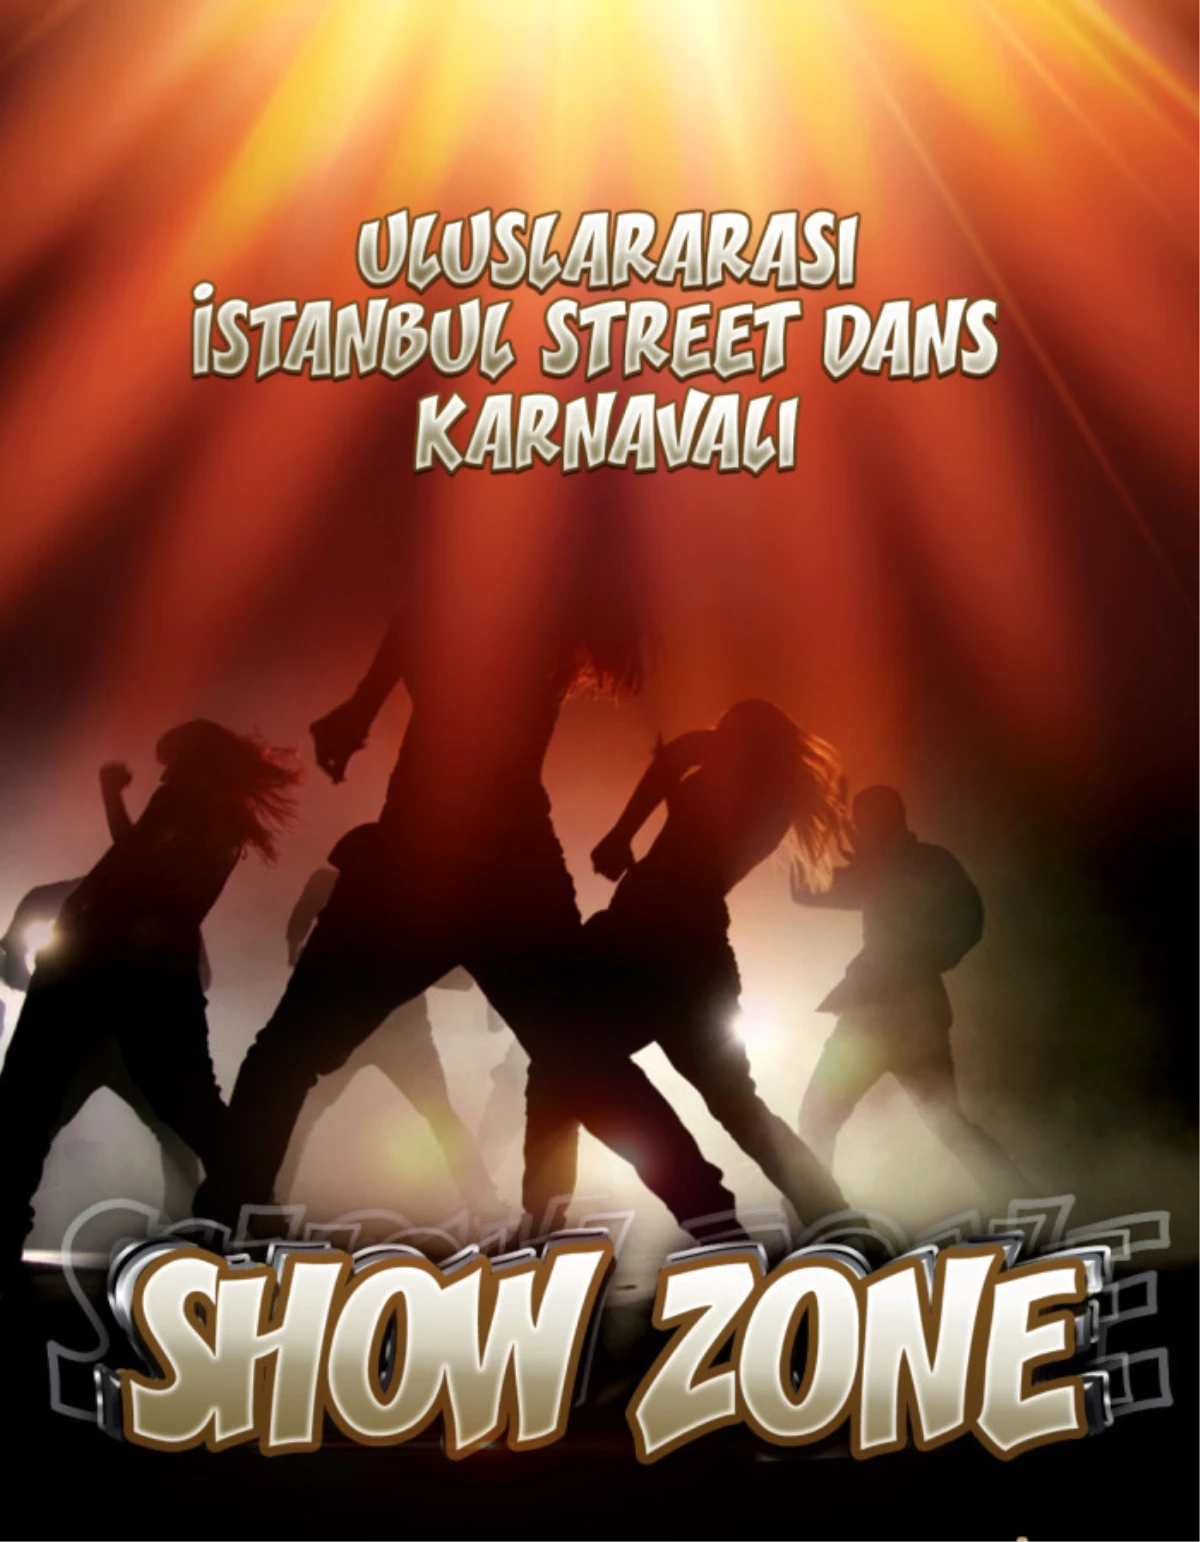 Uluslararası İstanbul Street Dans Karnavalı "Show Zone"